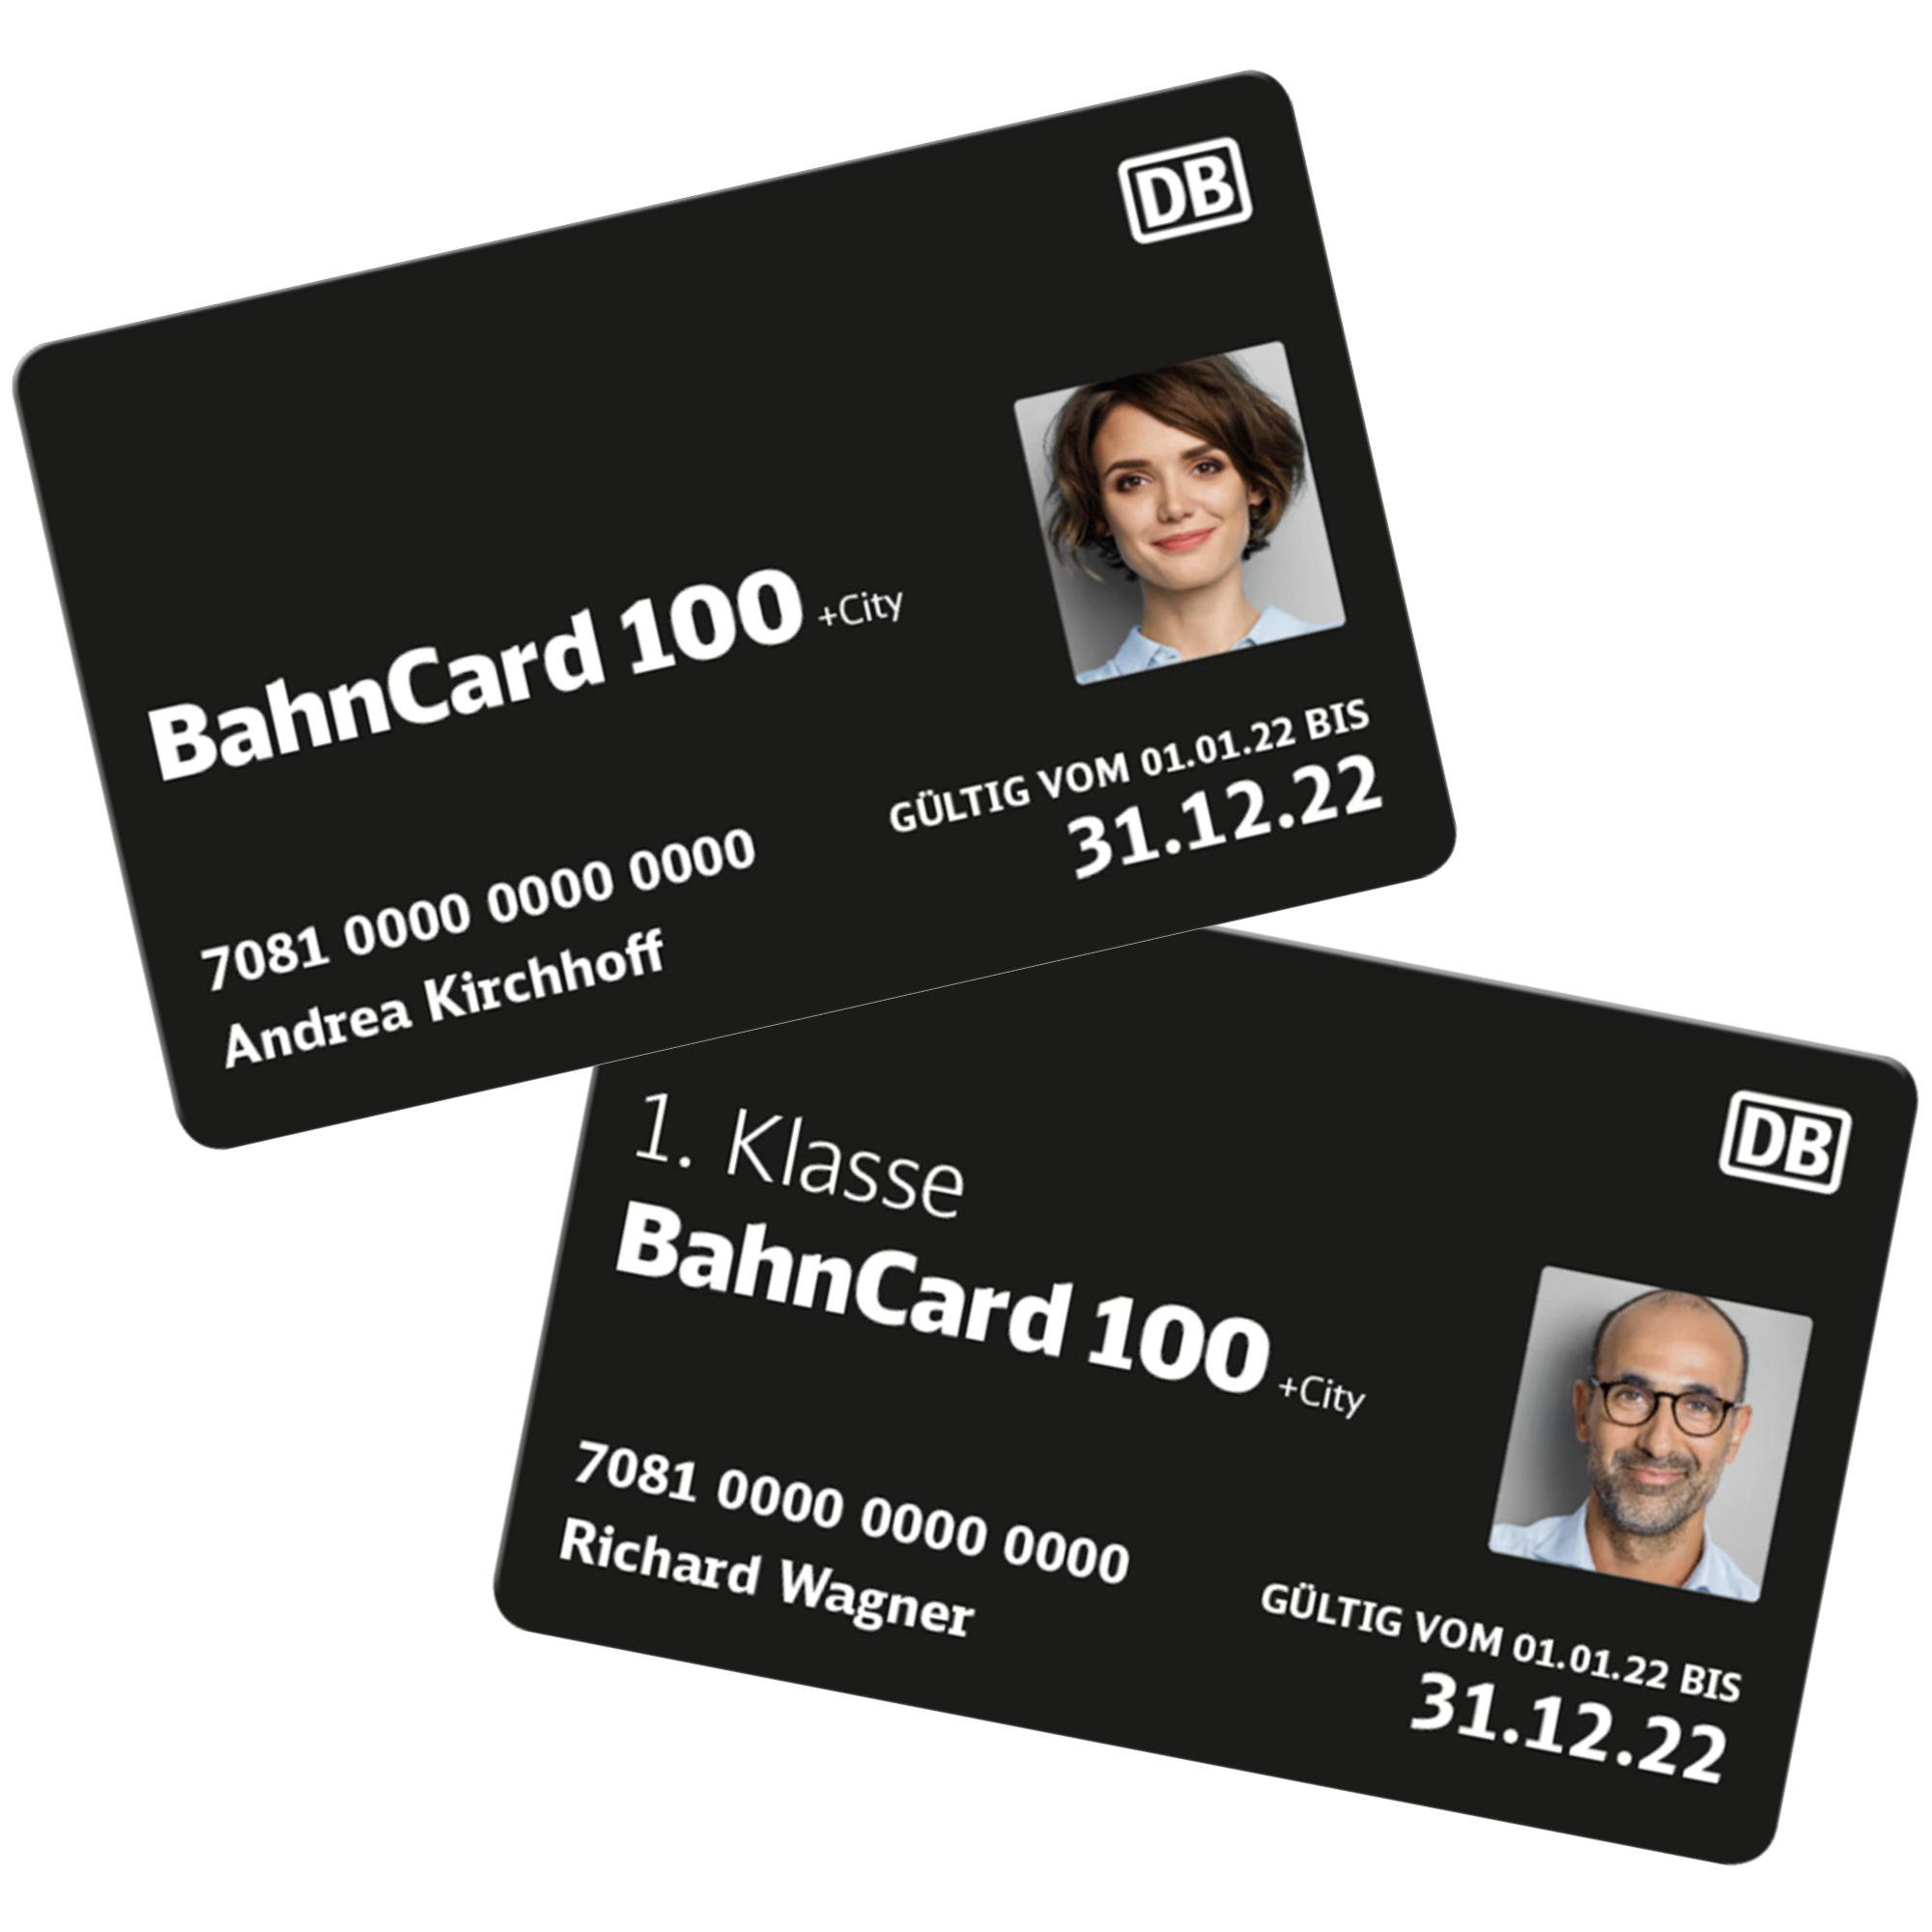 BahnCard 100 + city